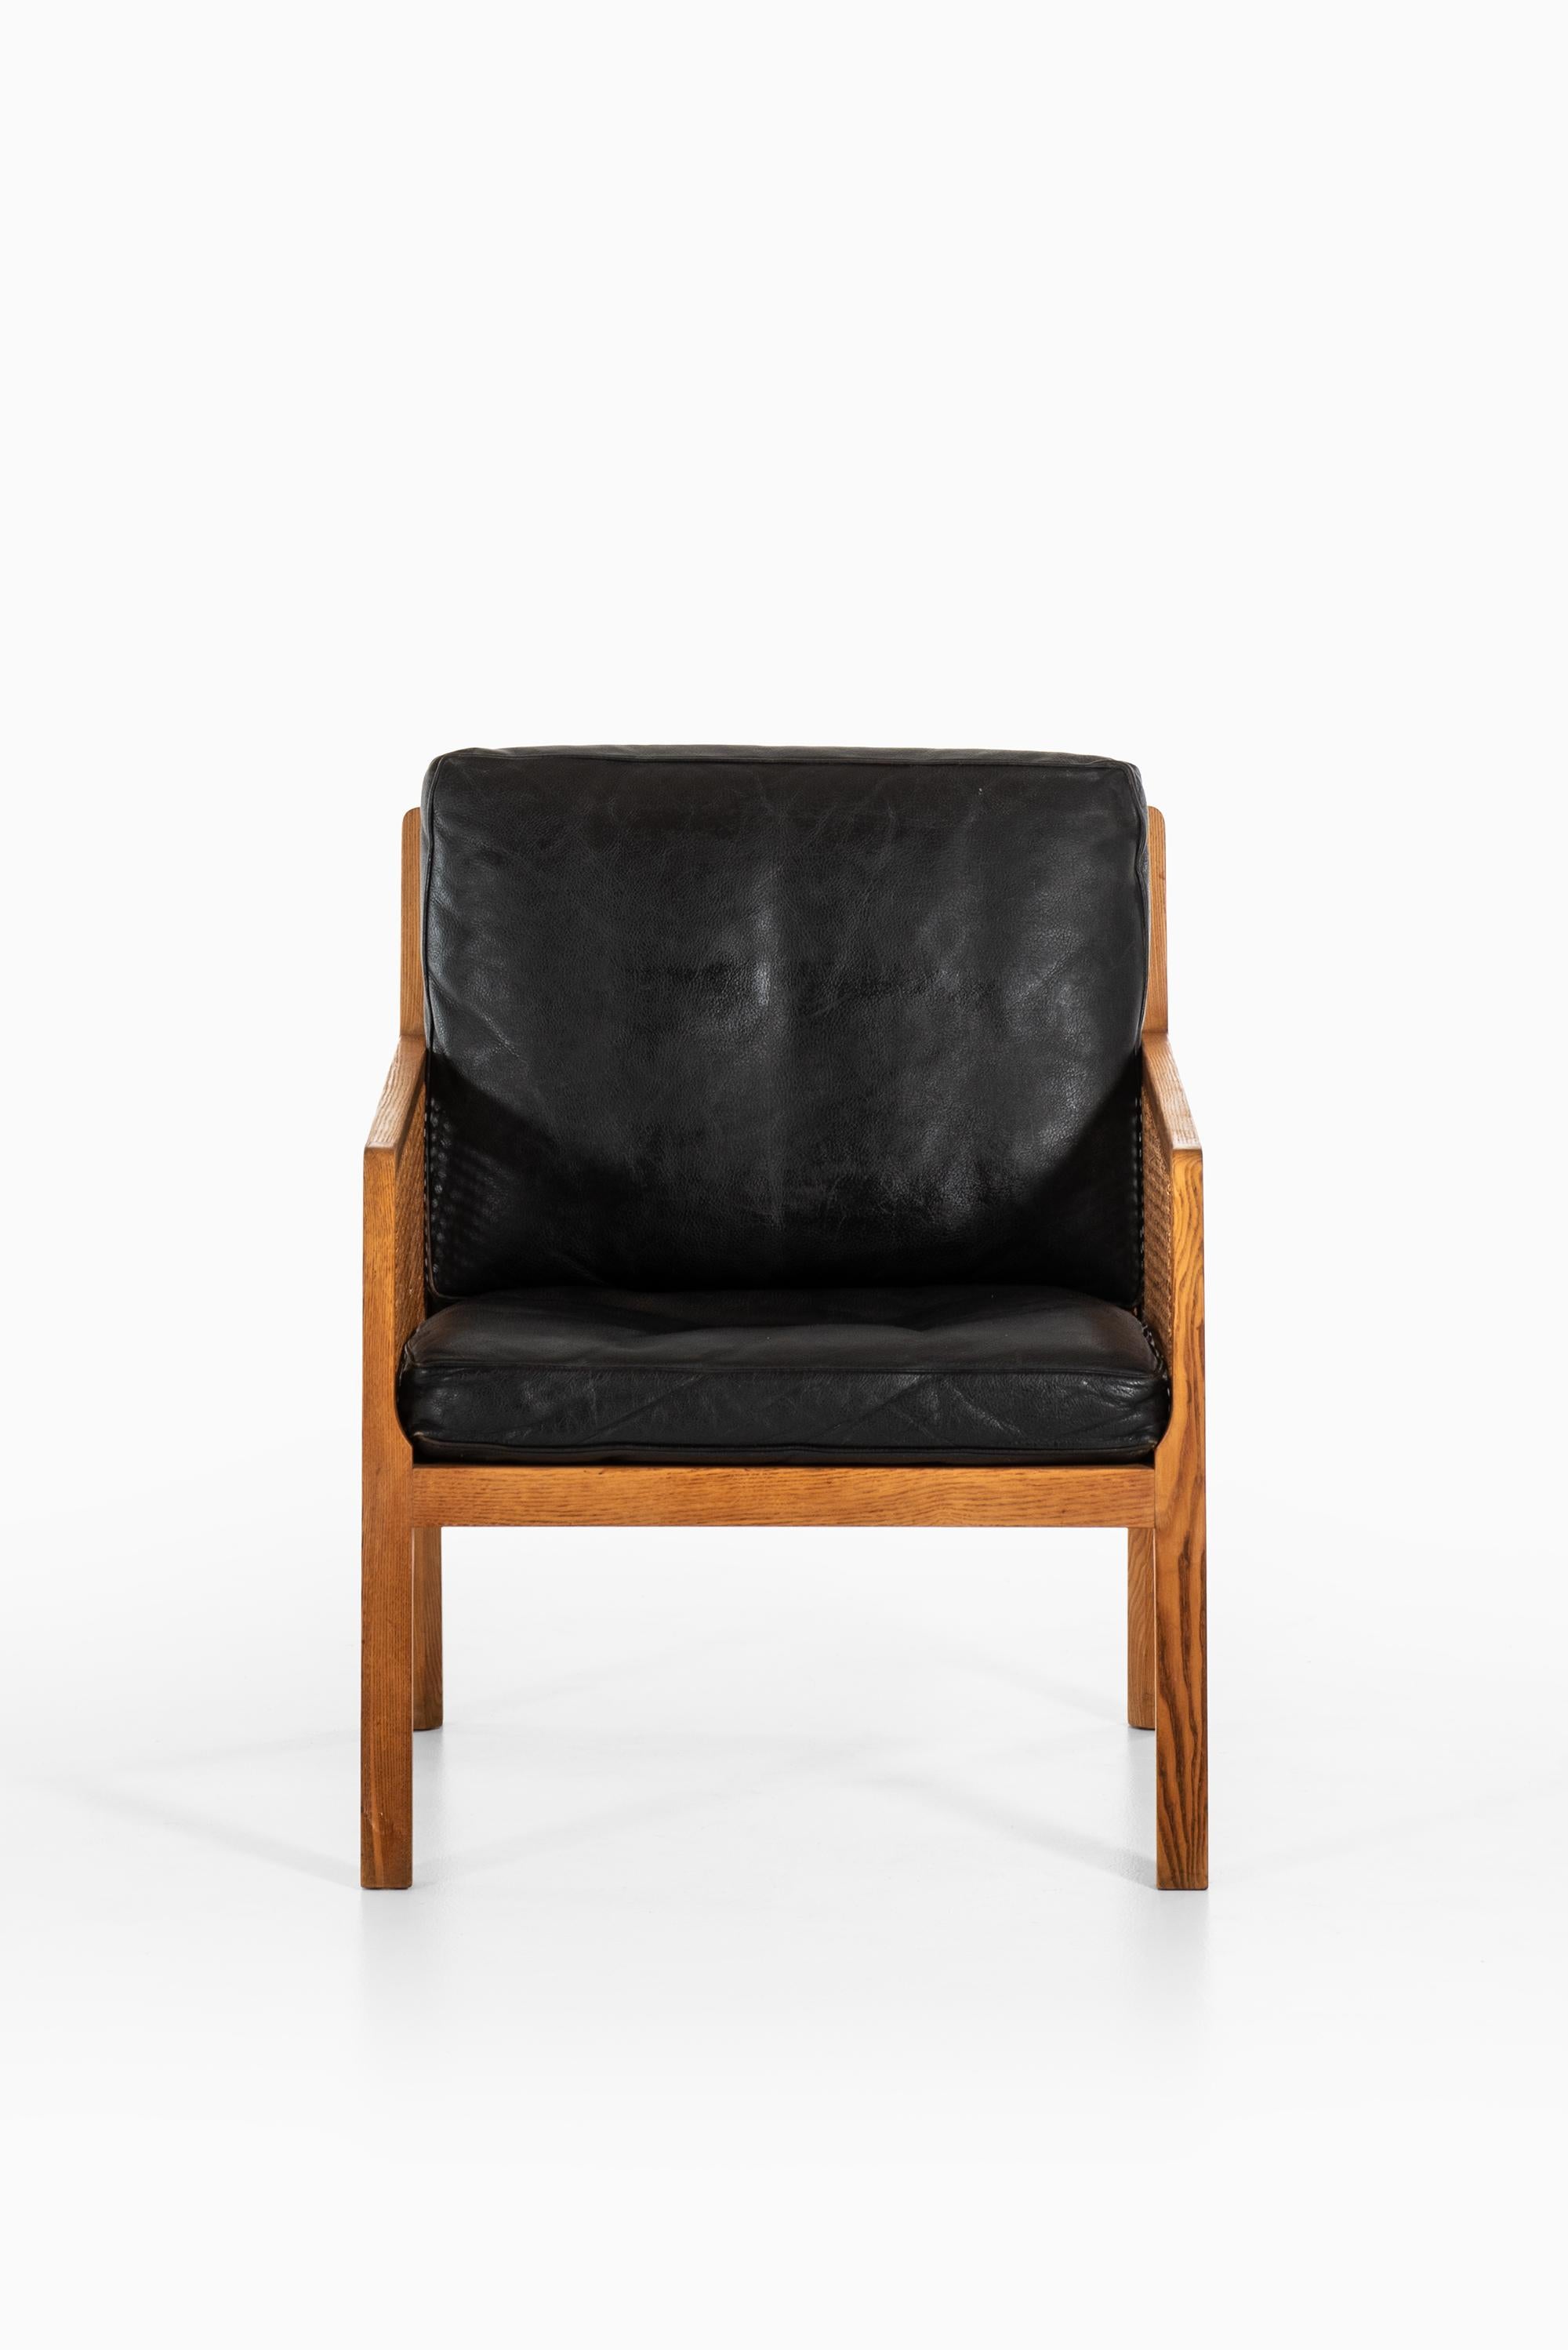 Sehr seltener Sessel, entworfen von Bernt Petersen. Produziert von Wørts Møbelsnedkeri in Dänemark.